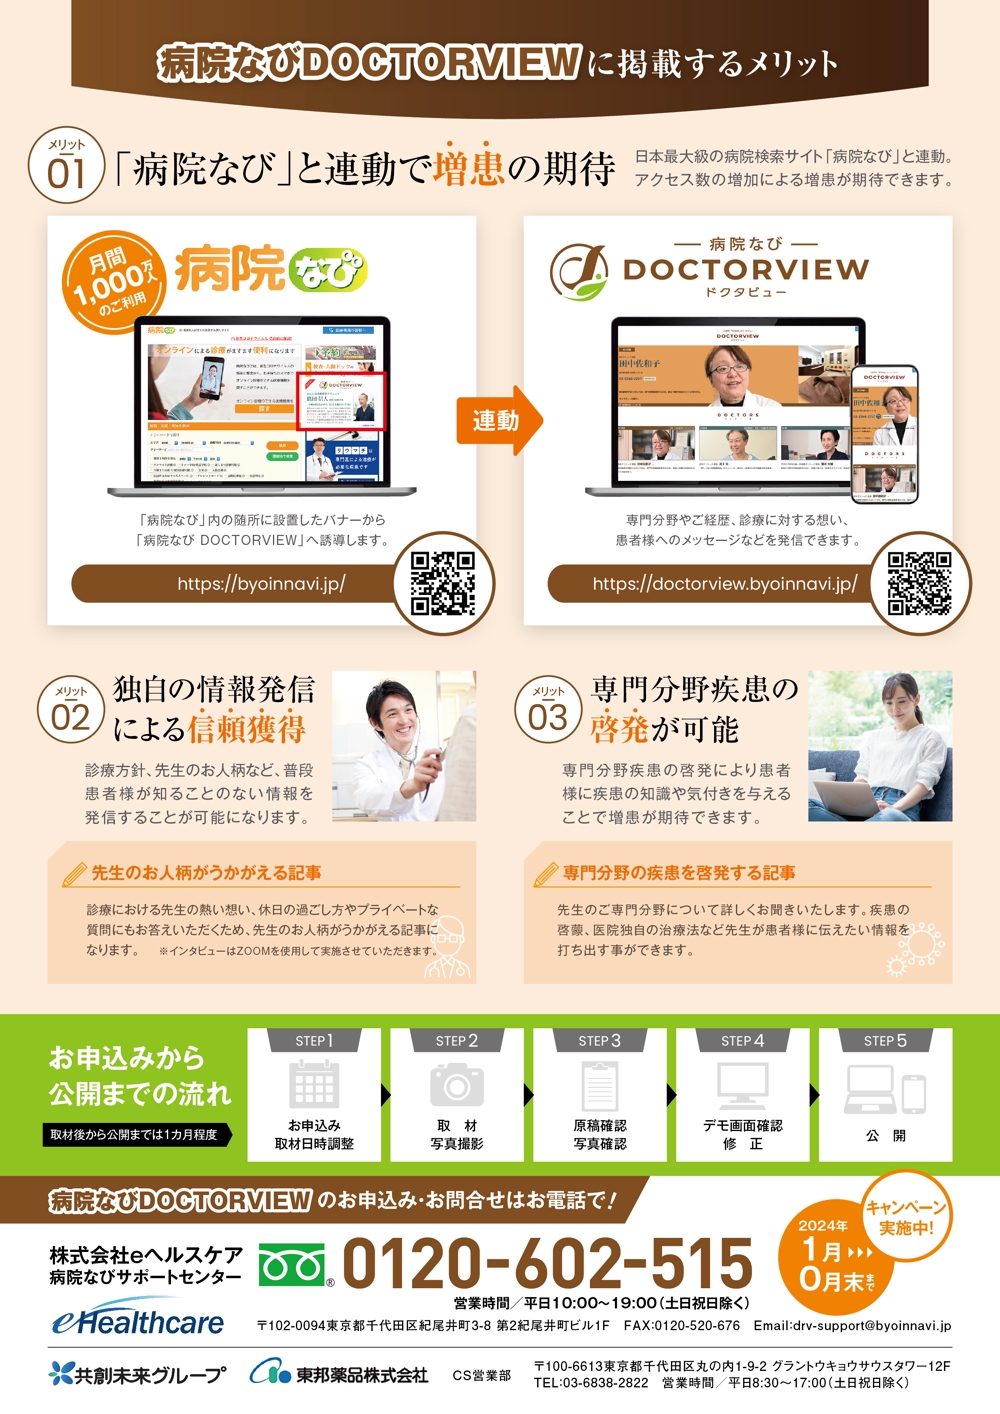 医療機関向け取材サービスのキャンペーン用チラシ作成(A4表裏)